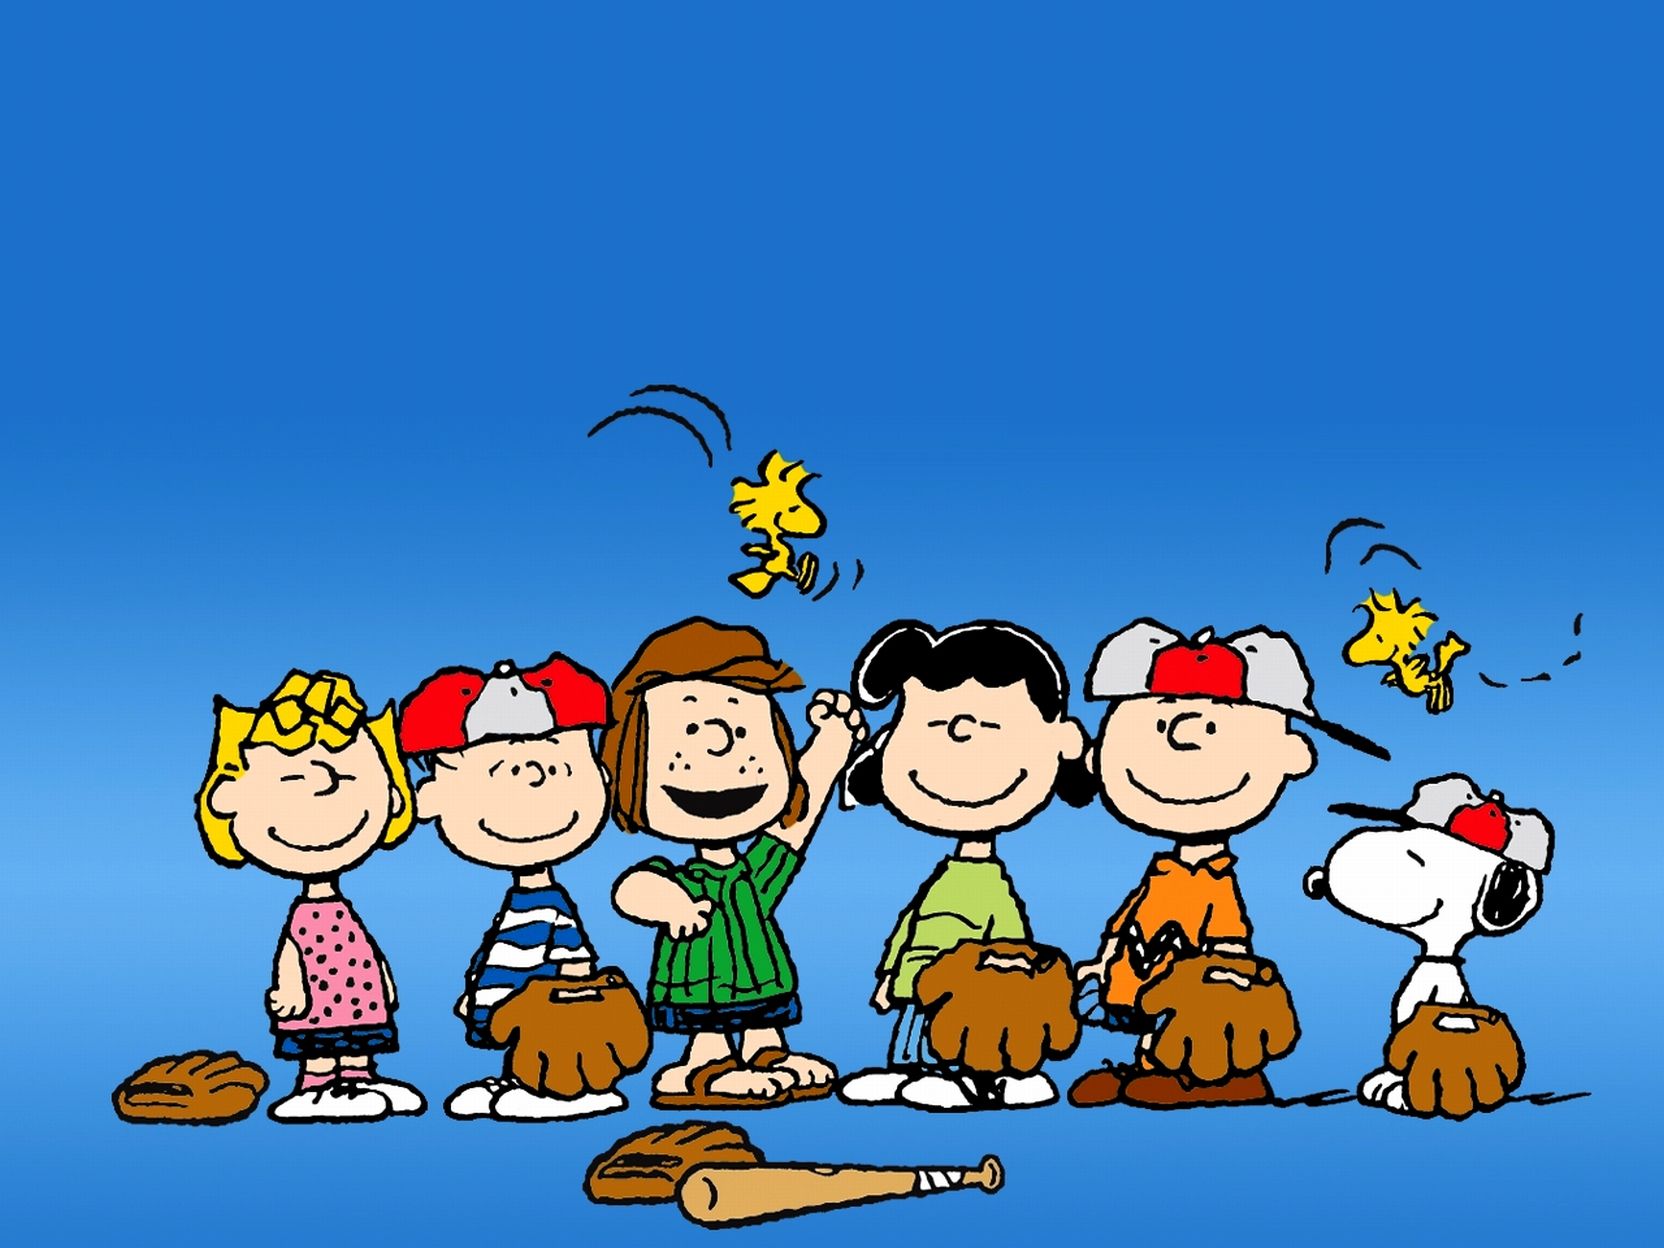 Peanuts Snoopy Desktop - Bing images